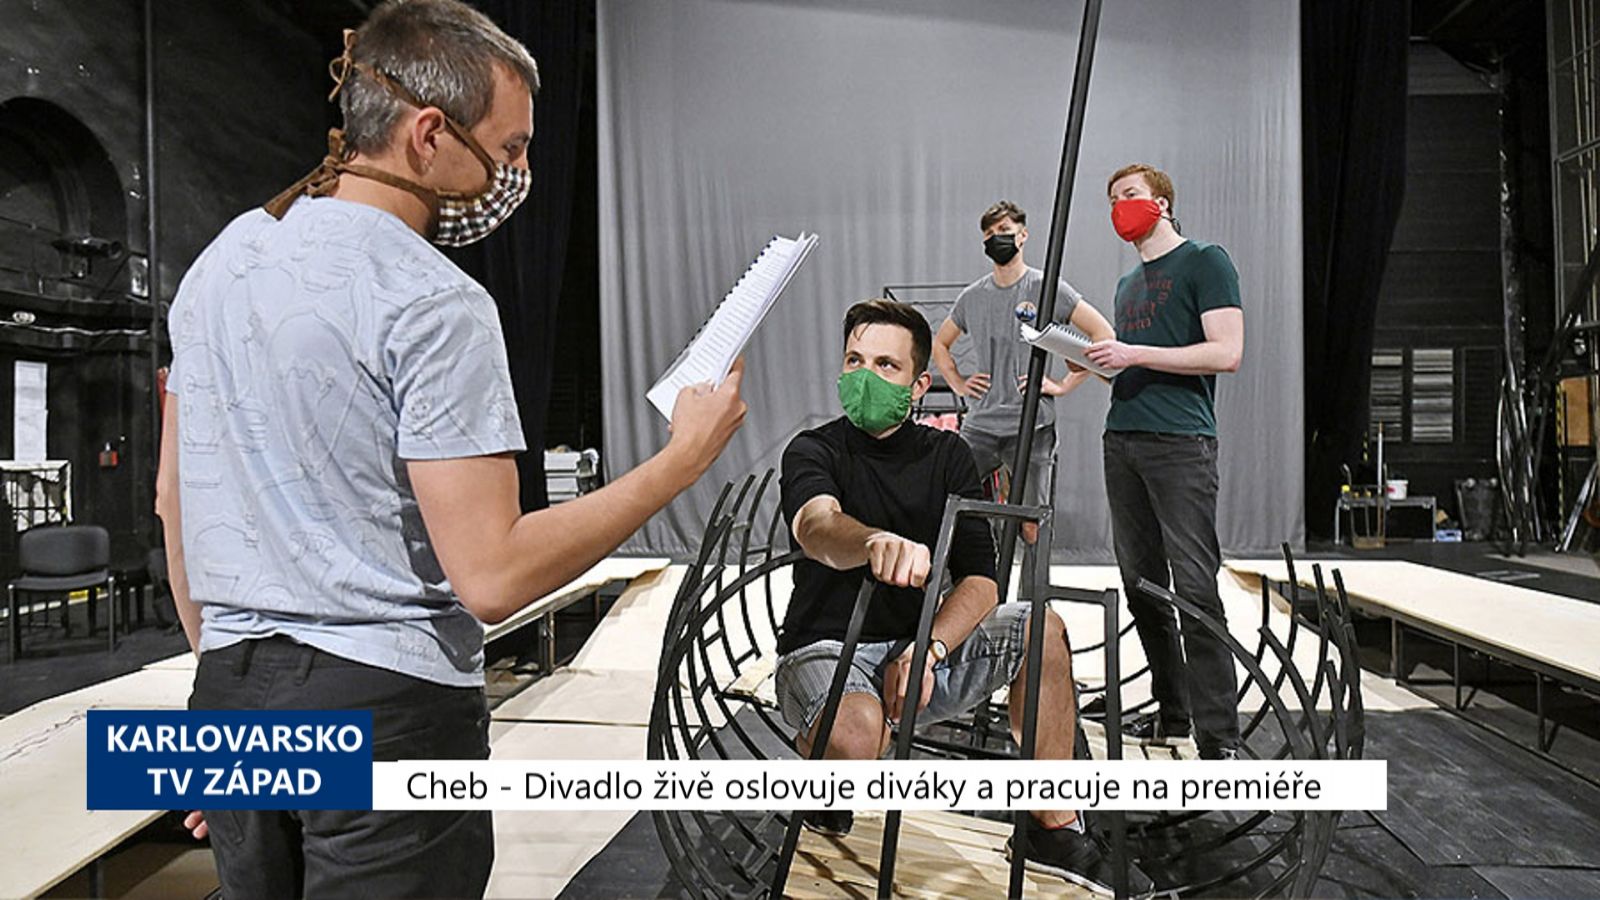 Cheb: Divadlo živě oslovuje diváky a pracuje na premiéře (TV Západ)